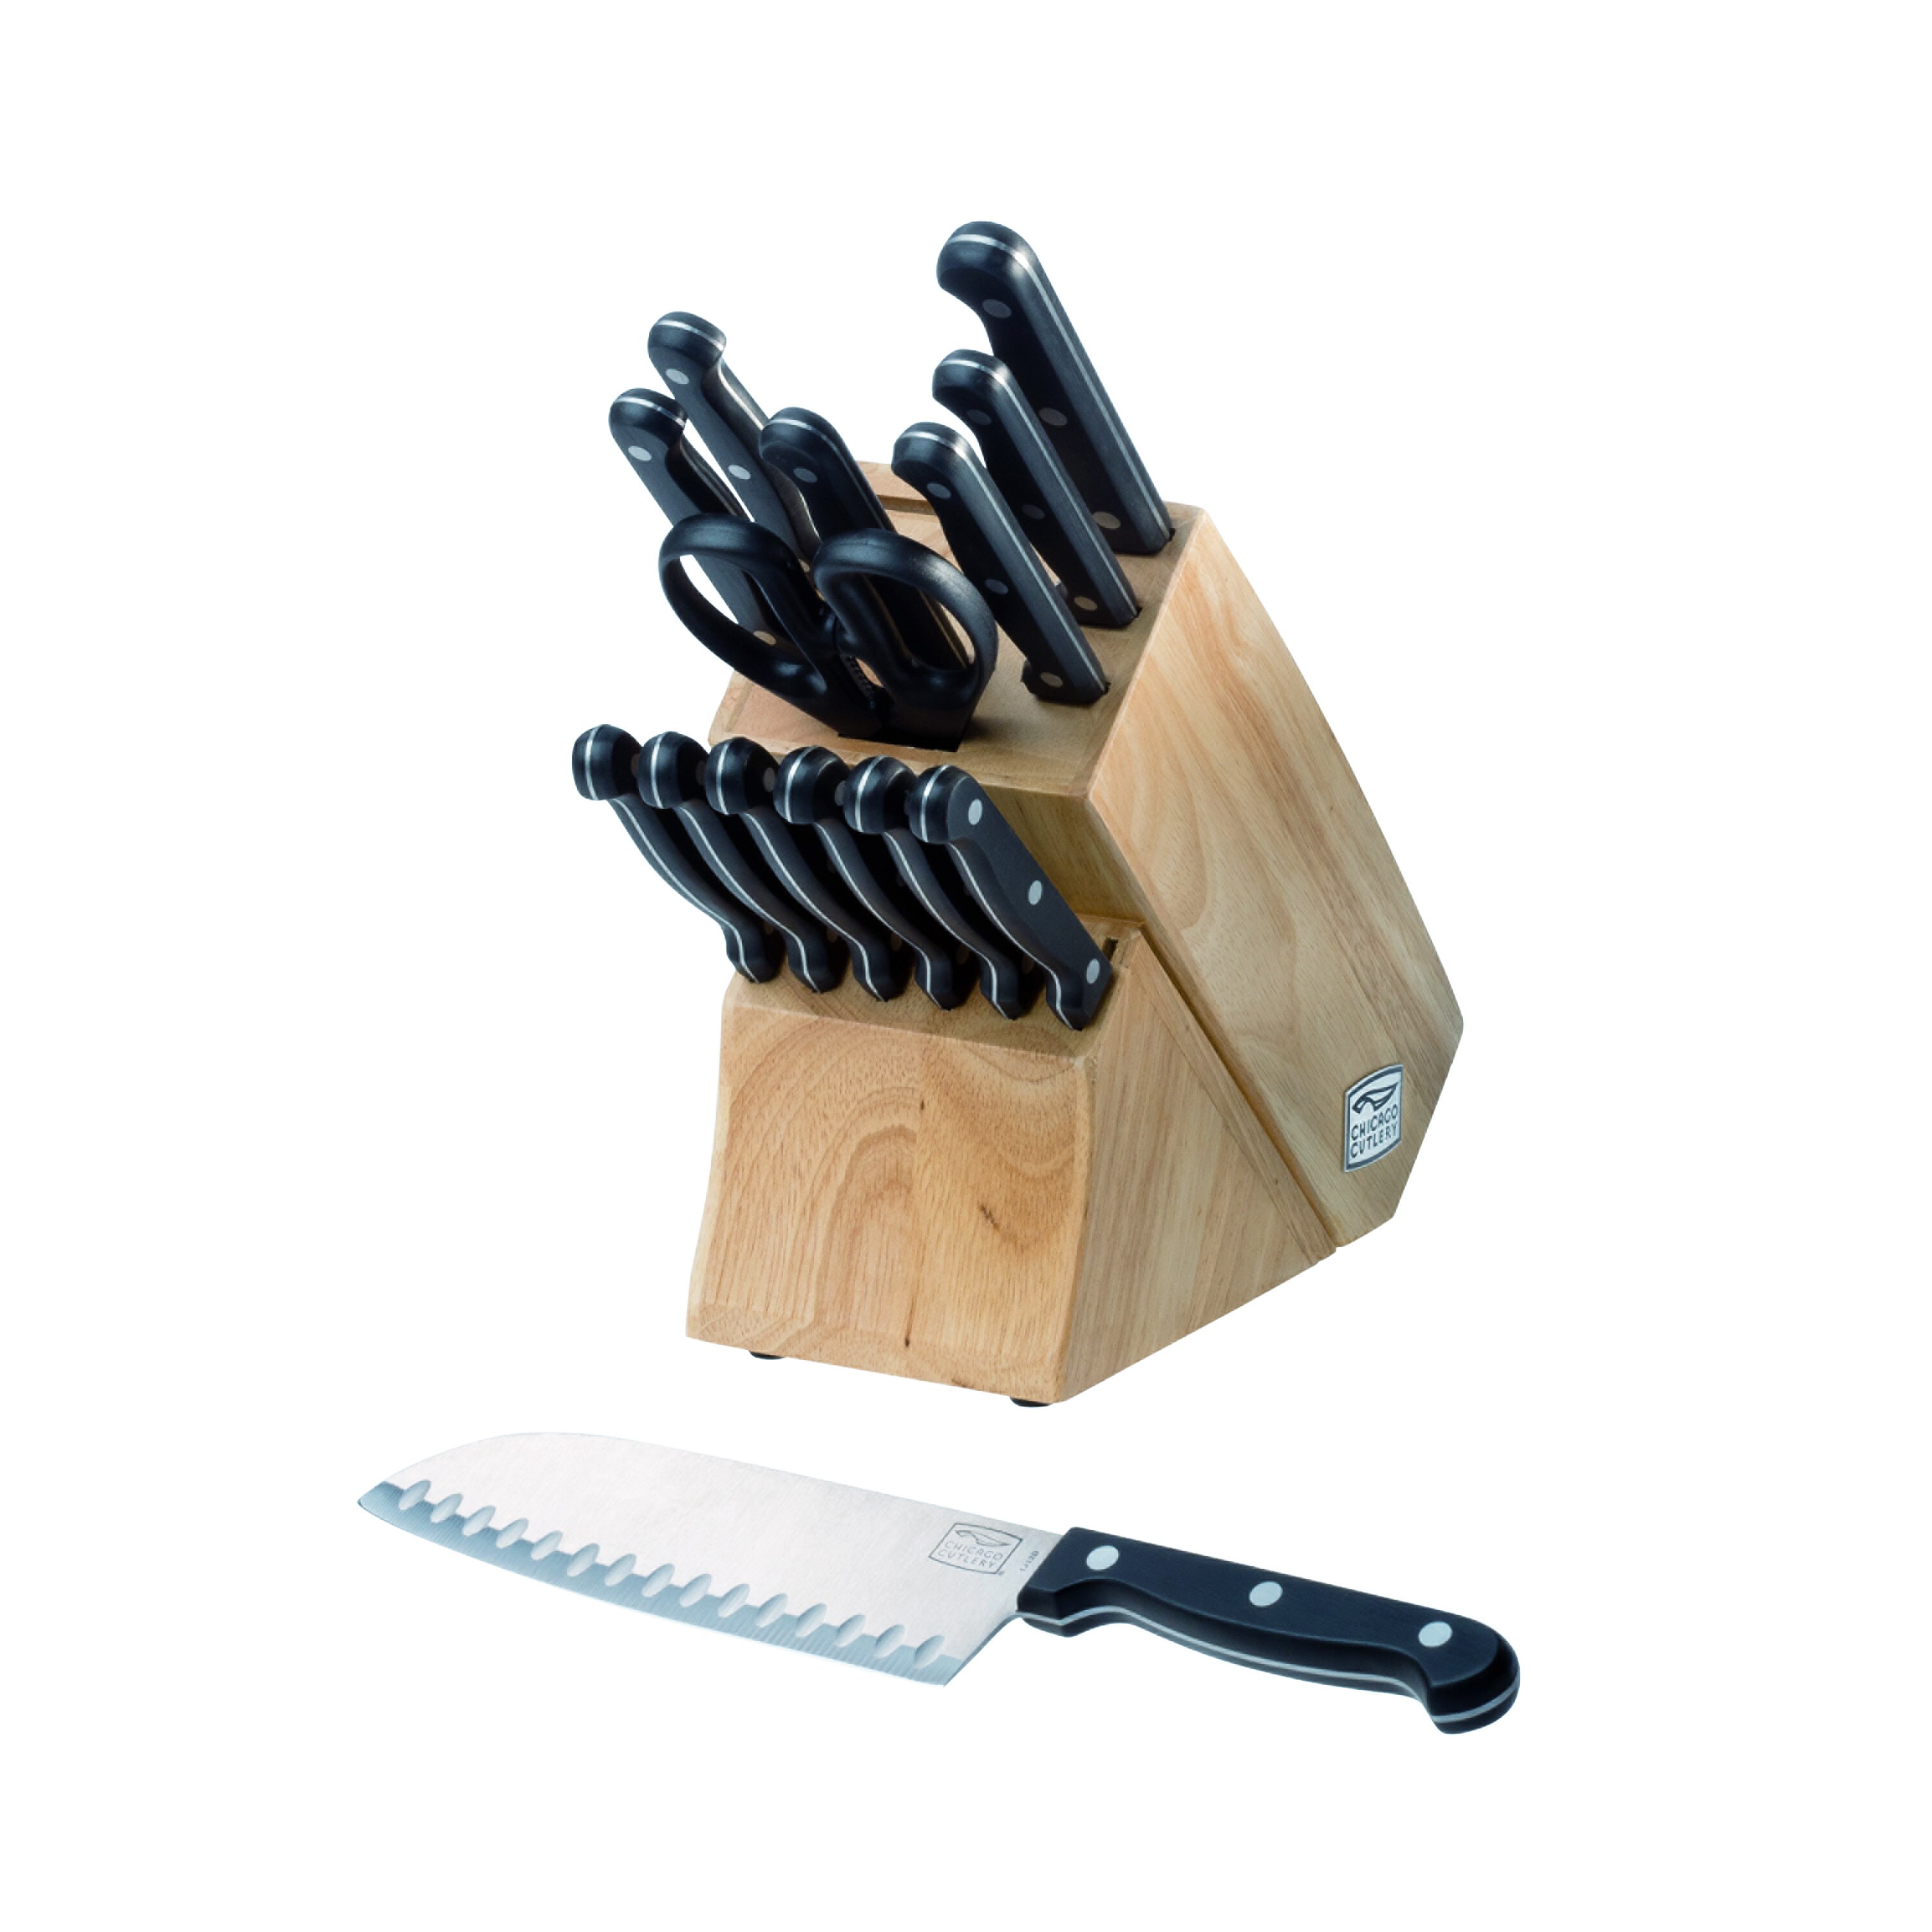 https://ak1.ostkcdn.com/images/products/3456815/Chicago-Cutlery-Essentials-15-piece-Knife-Set-3fb7f416-f13c-4b07-8a5f-3ba1de629175.jpg